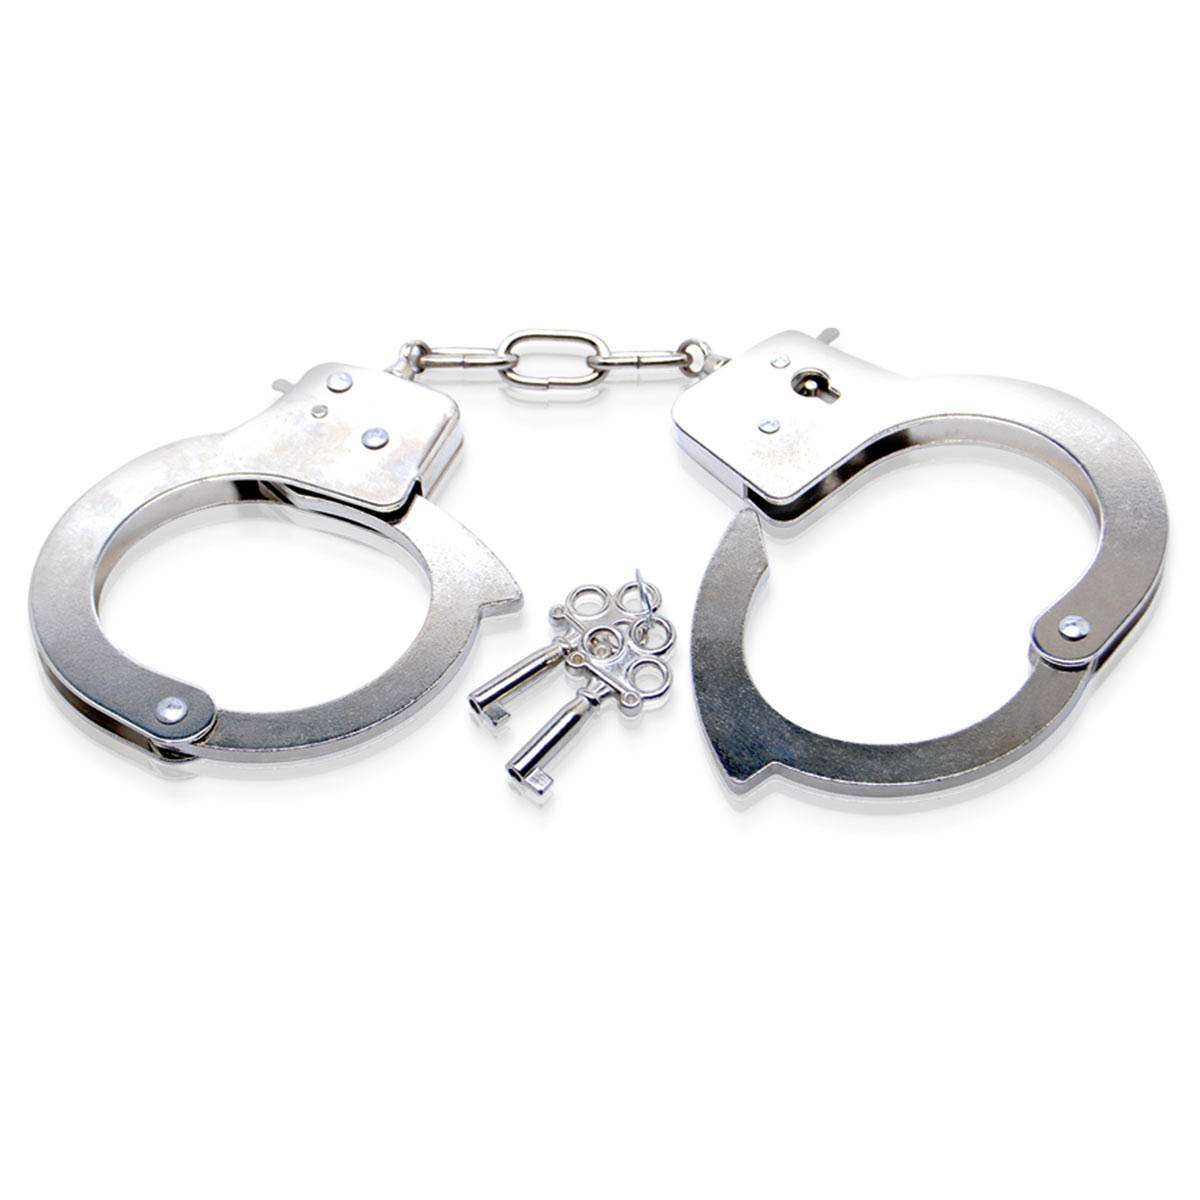 Металлические секс наручники: БДСМ магазин XXXFantasy для интима, доставим  срочно